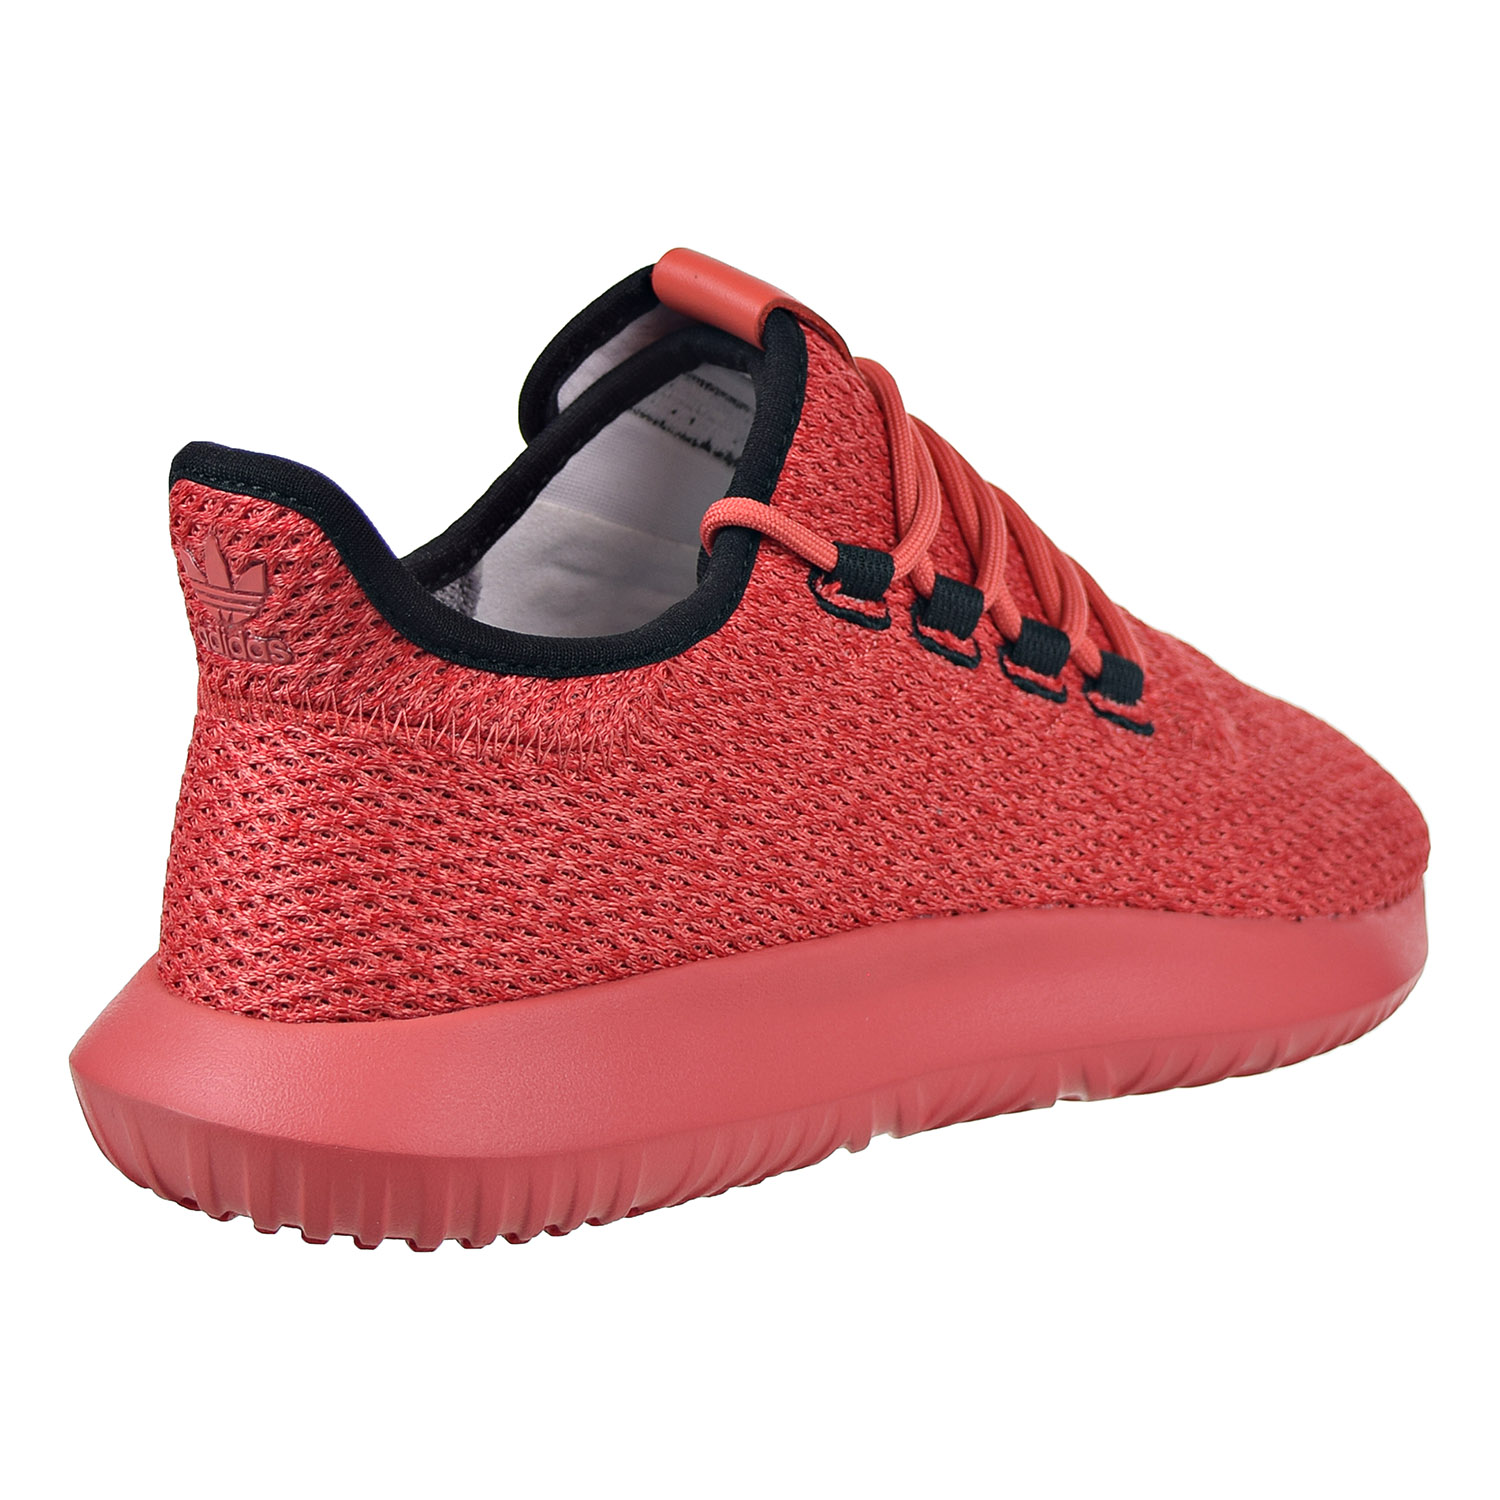 Adidas Tubular Shadow Mens Shoes Red-Core Black b96400 | eBay